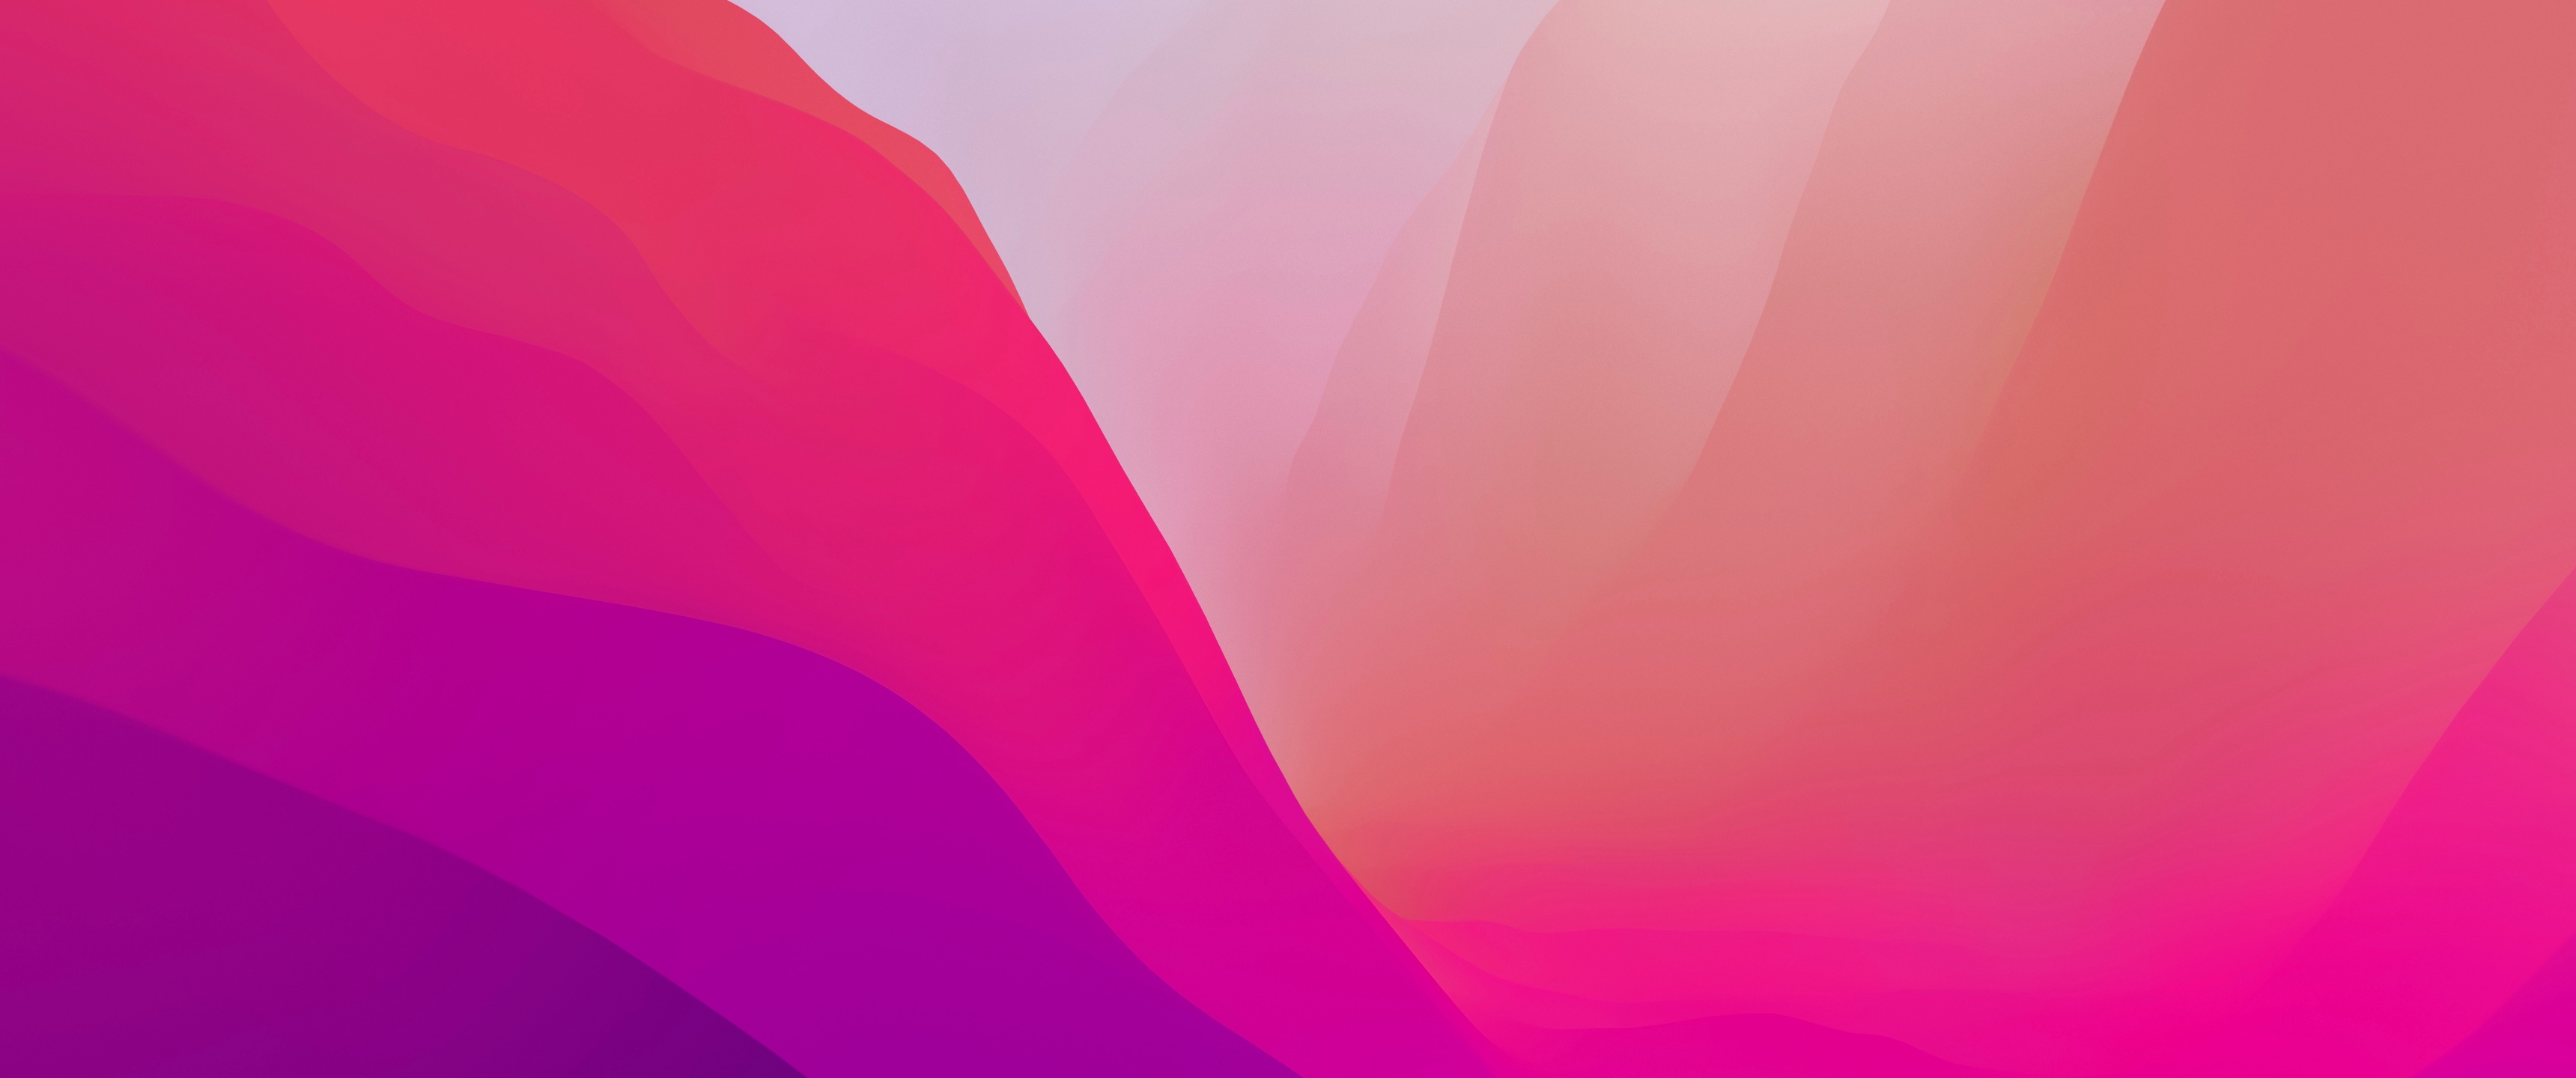 macOS Monterey Wallpaper, Pink, Gradients (macOS Monterey Wallpaper, hồng, độ dốc): Hãy là người sớm nhất sở hữu những hình nền đẹp độc quyền cho hệ điều hành macOS Monterey của Apple. Xem ngay những hình ảnh theo từ khóa “macOS Monterey Wallpaper, hồng, độ dốc” để lựa chọn ưng ý nhất cho màn hình của bạn. Hãy thử và cảm nhận ngay sự tươi mới và tinh tế của các độ dốc màu hồng tinh tế này!